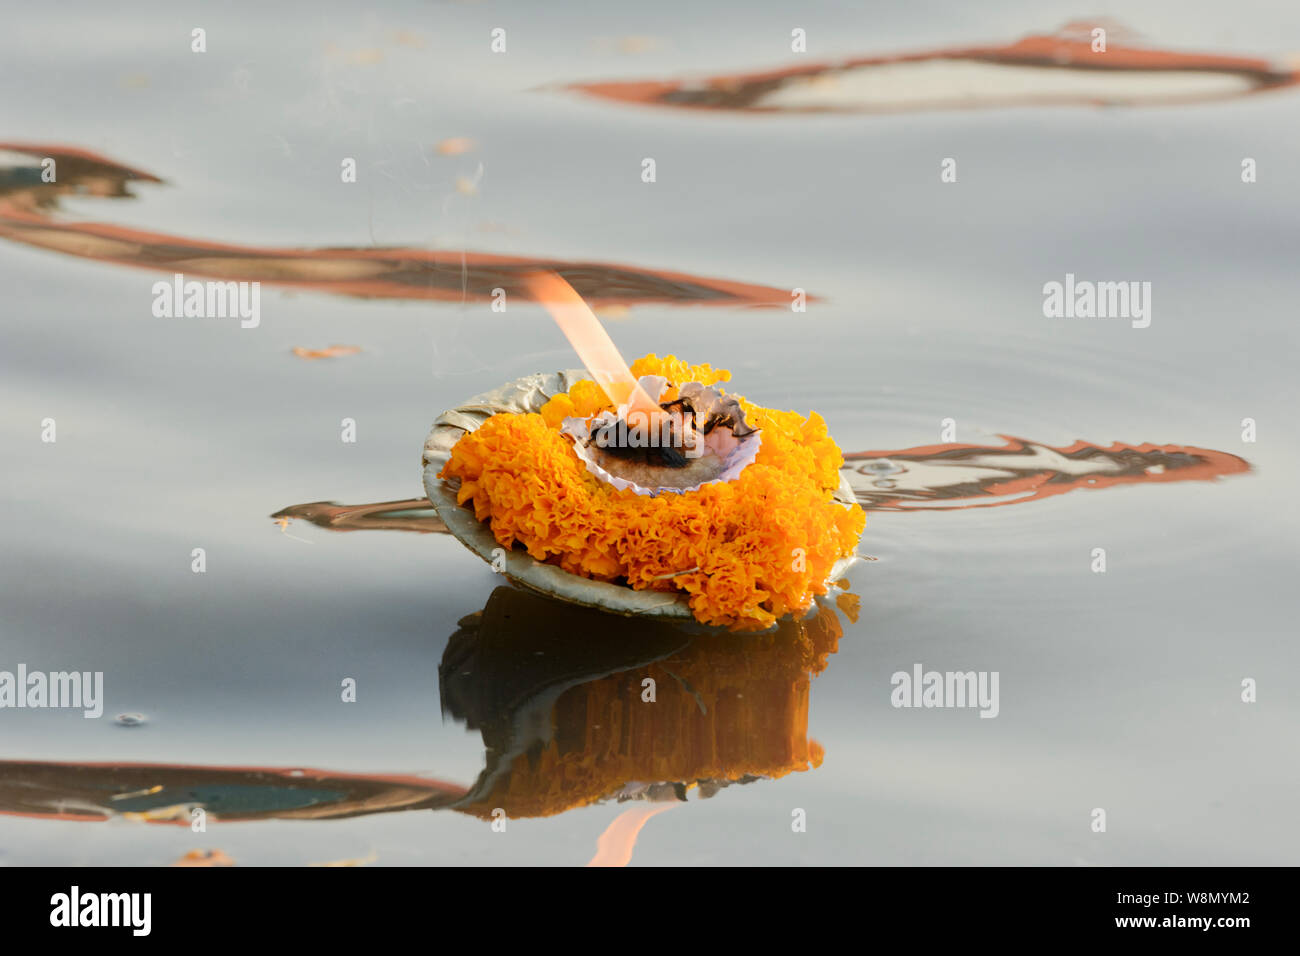 Une fleur de gravure bougie (une offrande aux dieux) flotte sur le Gange à Varanasi, Uttar Pradesh, Inde, Asie du Sud. Banque D'Images